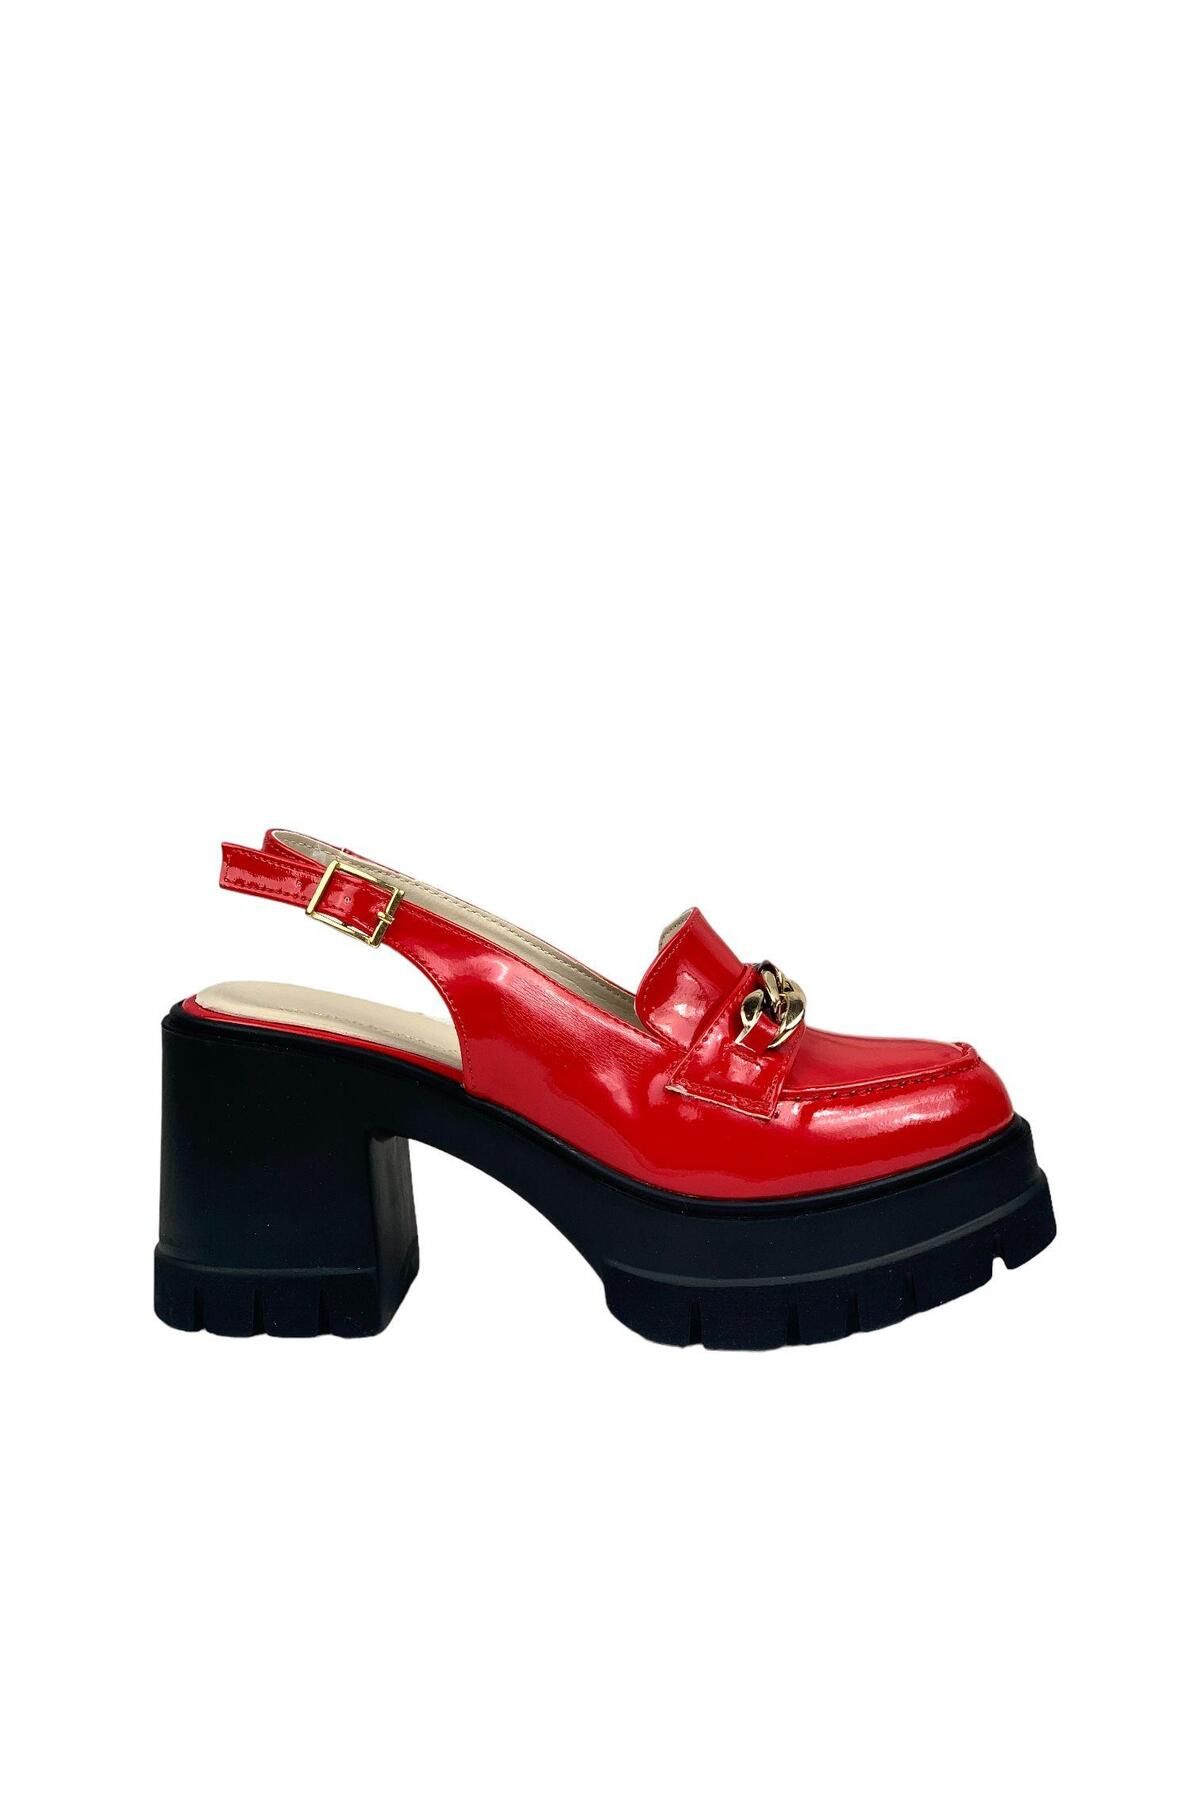 bescobel Kadın Hutyam Kırmızı Rugan Arkası Açık Leofer Ayakkabı Zincir Tokalı 10 cm 650